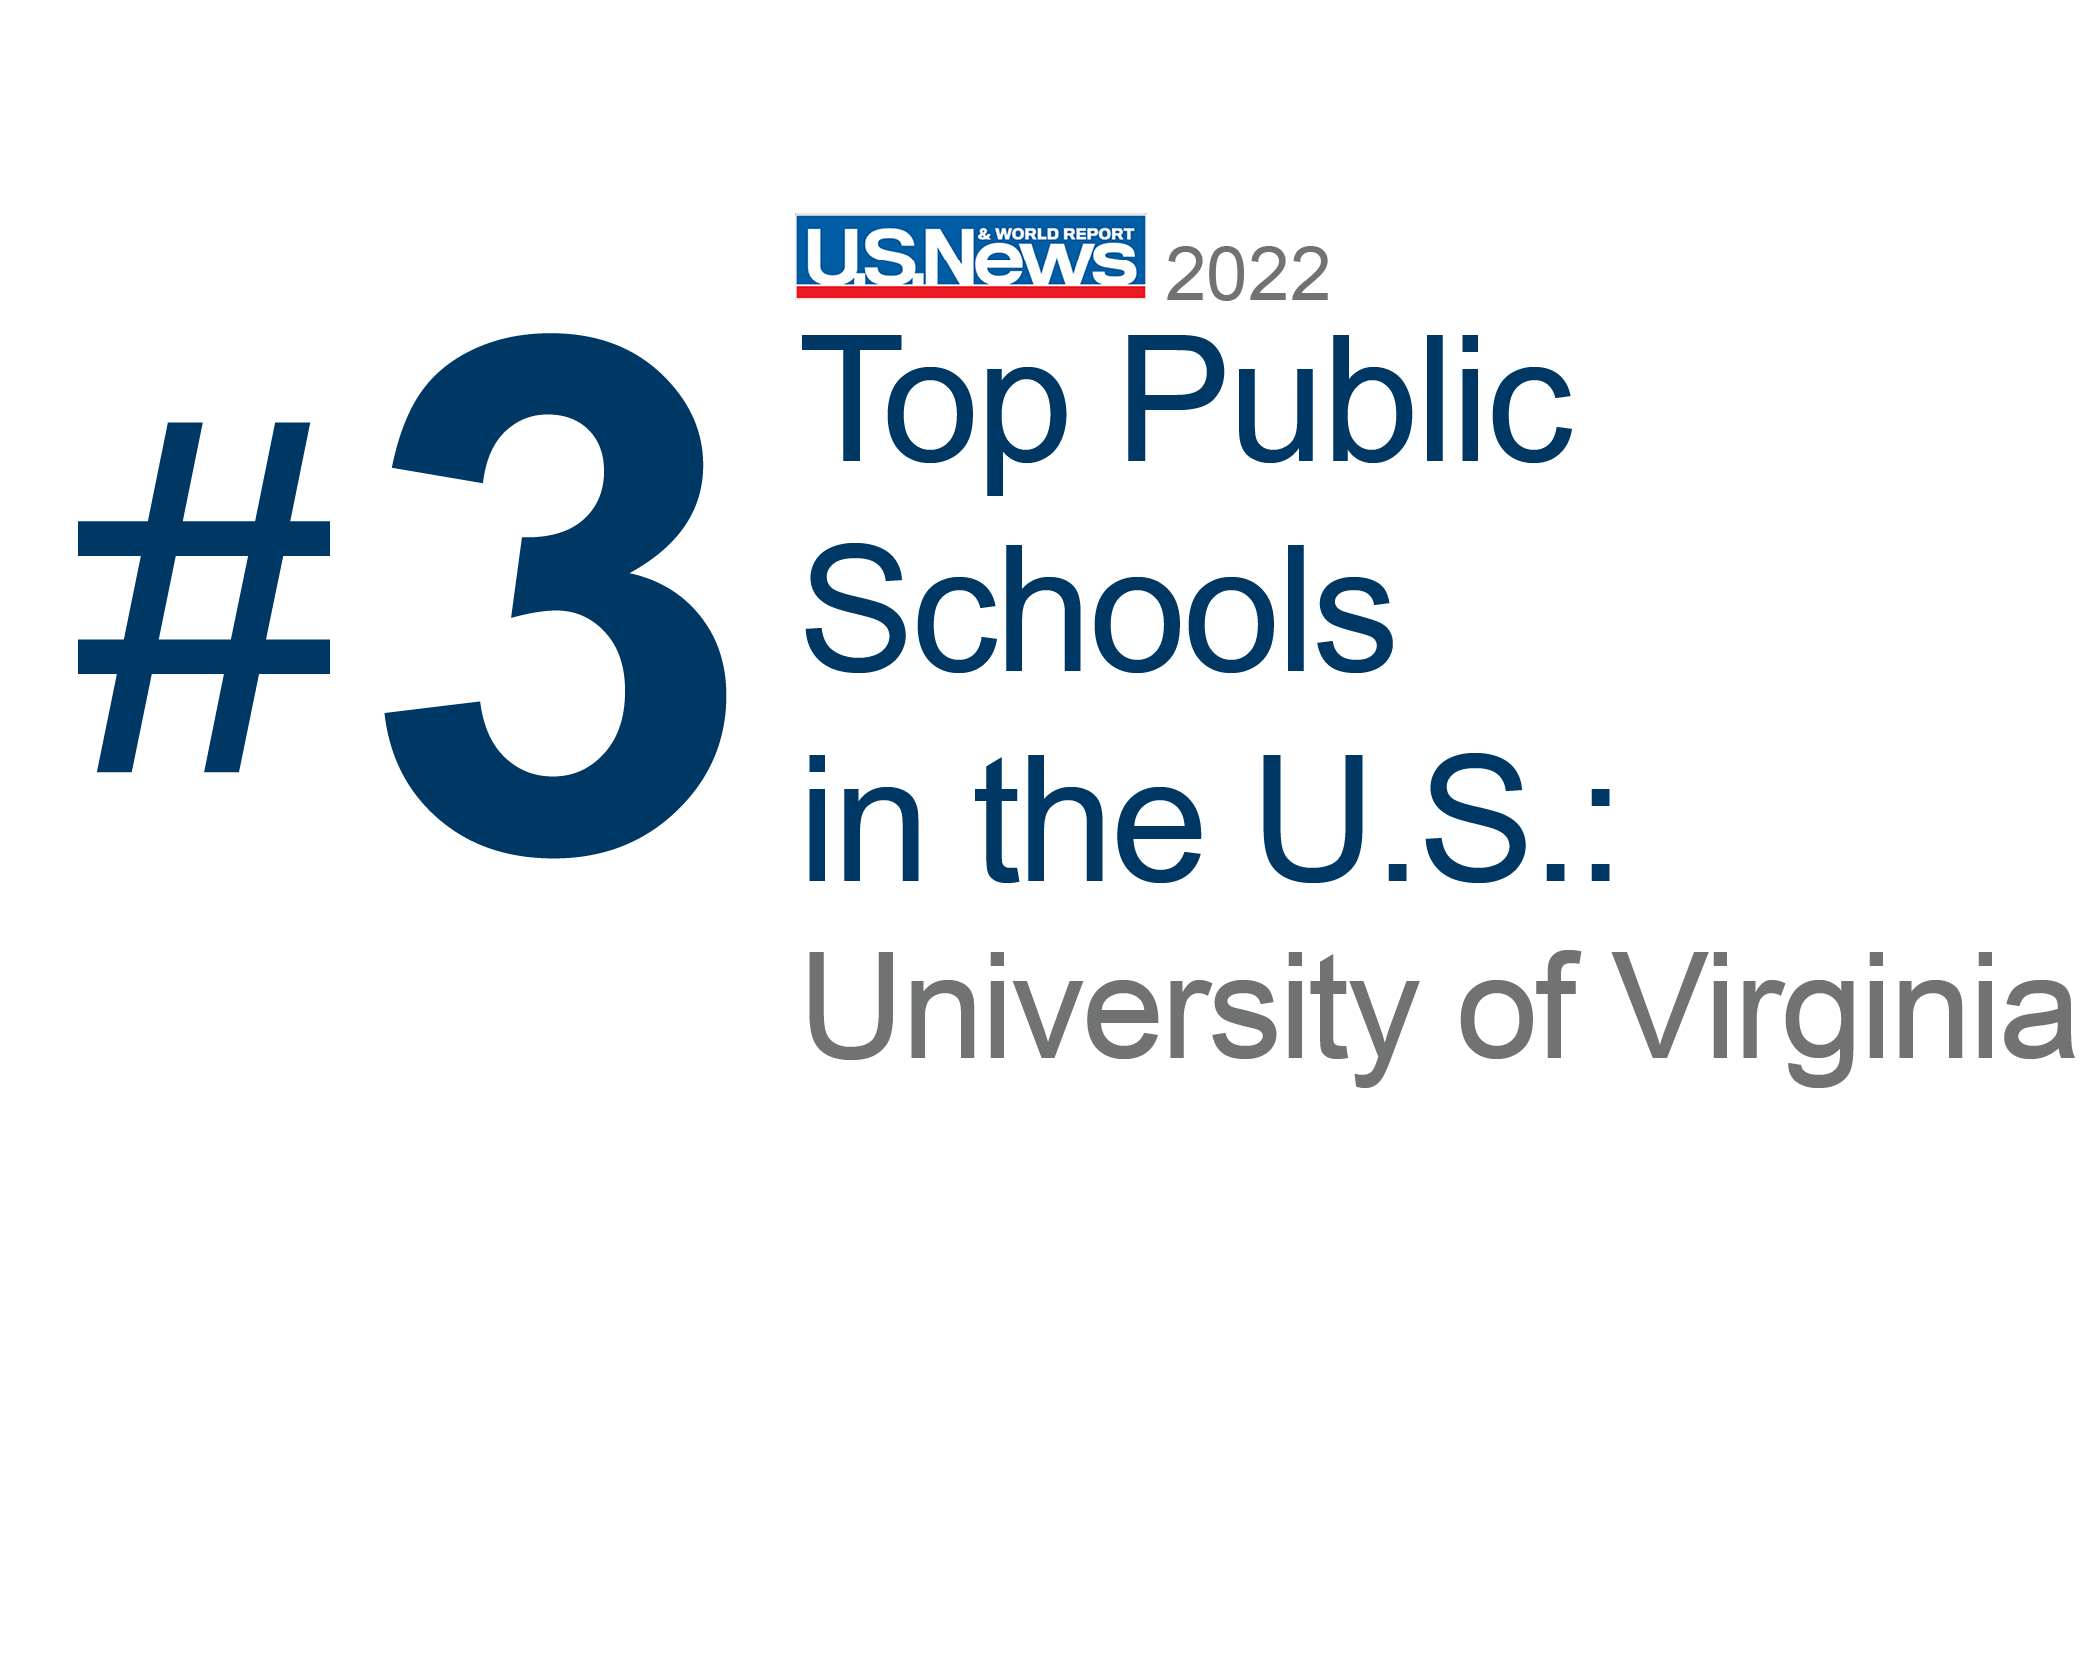 UVA Top Public Schools Ranking